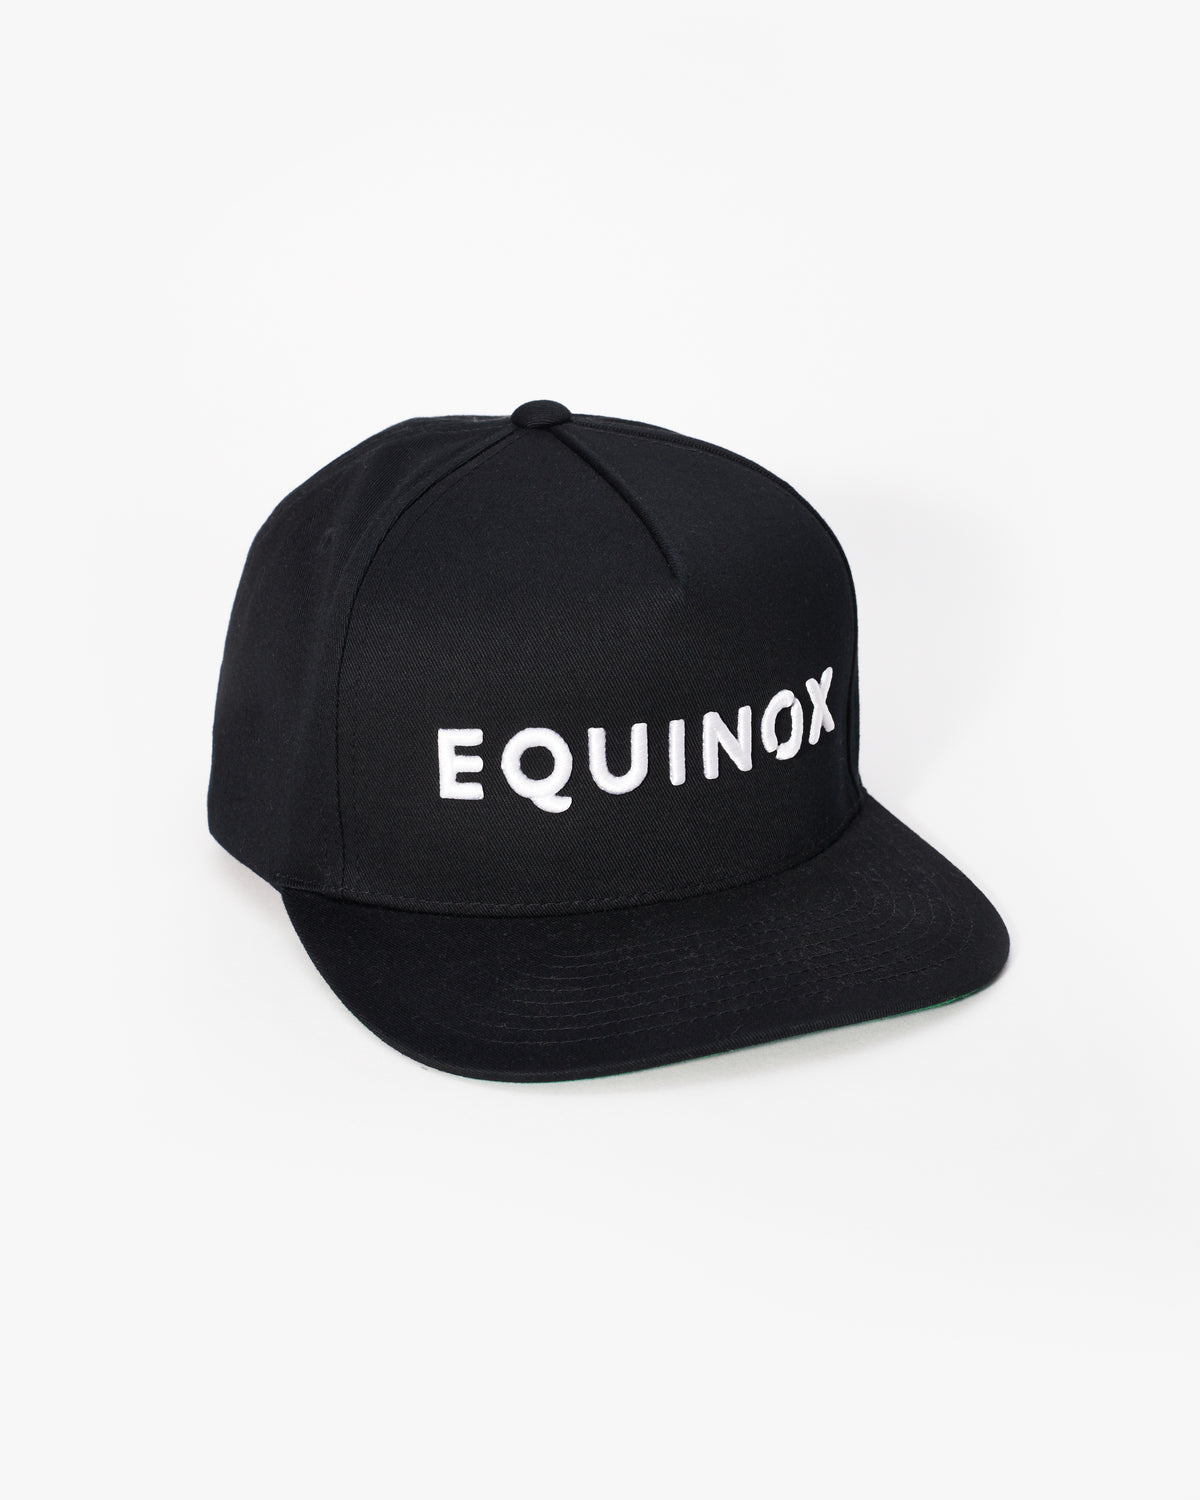 Equinox Snapback Flat Brim at Shop The Hat Equinox –